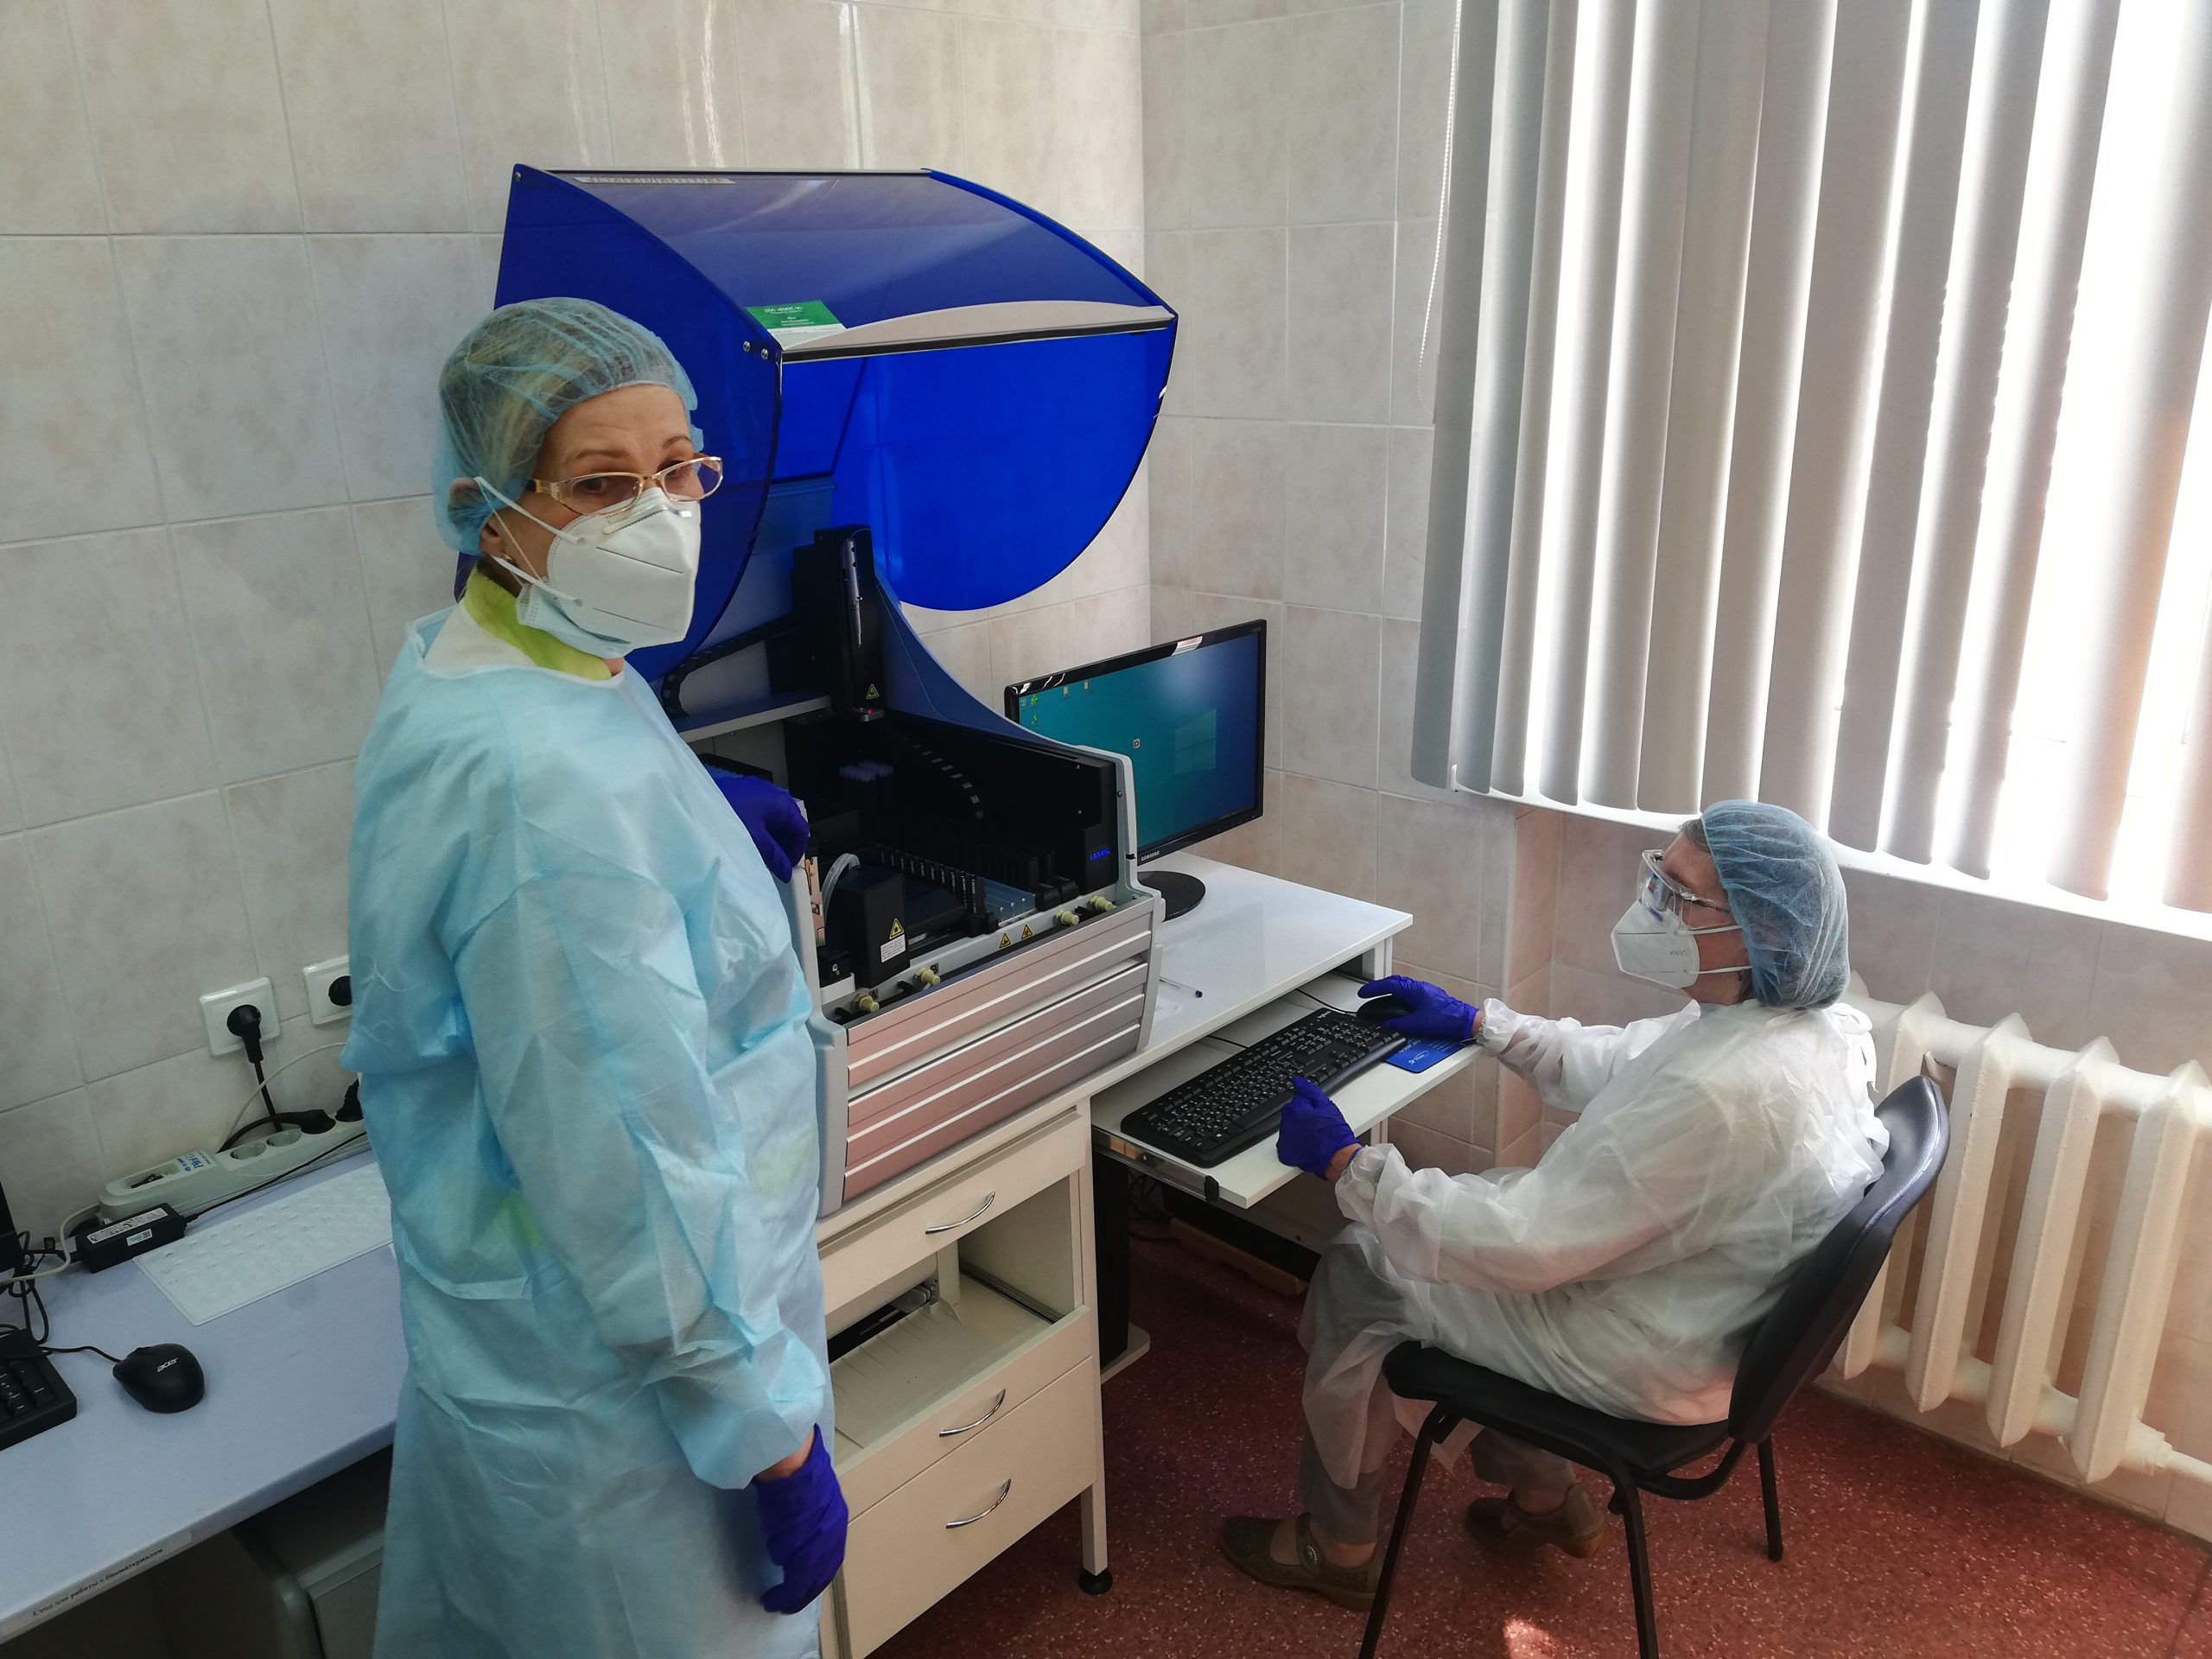 Новые анализаторы появились на вооружении клинико-диагностической лаборатории больницы Вересаева